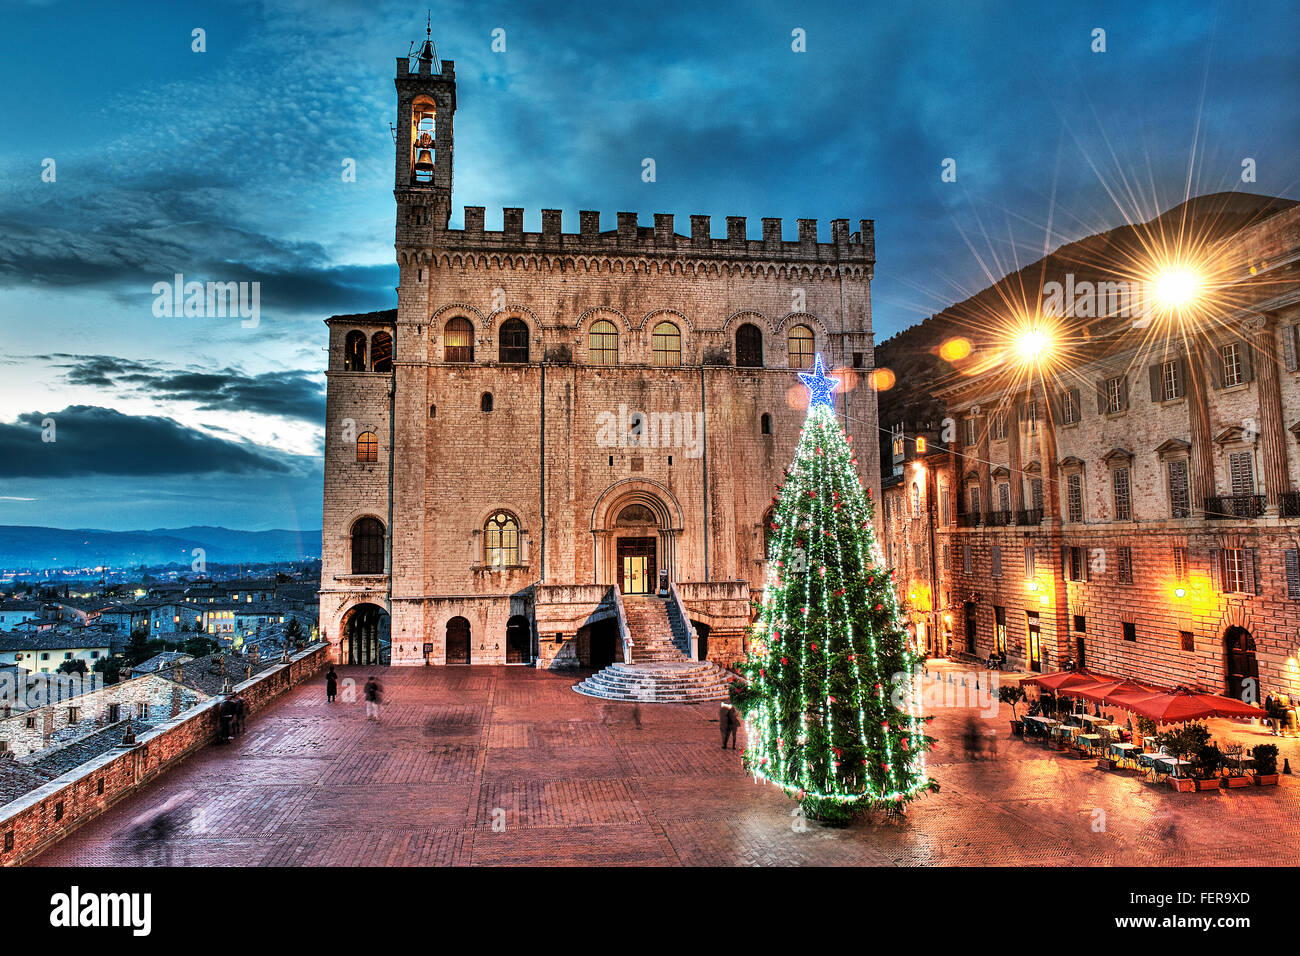 Gubbio, Umbrien, Italien in der Weihnachtszeit. Der herrlichen Piazza Grande mit Ihren historischen Palazzo dei Consoli und dem großen Baum Stockfoto